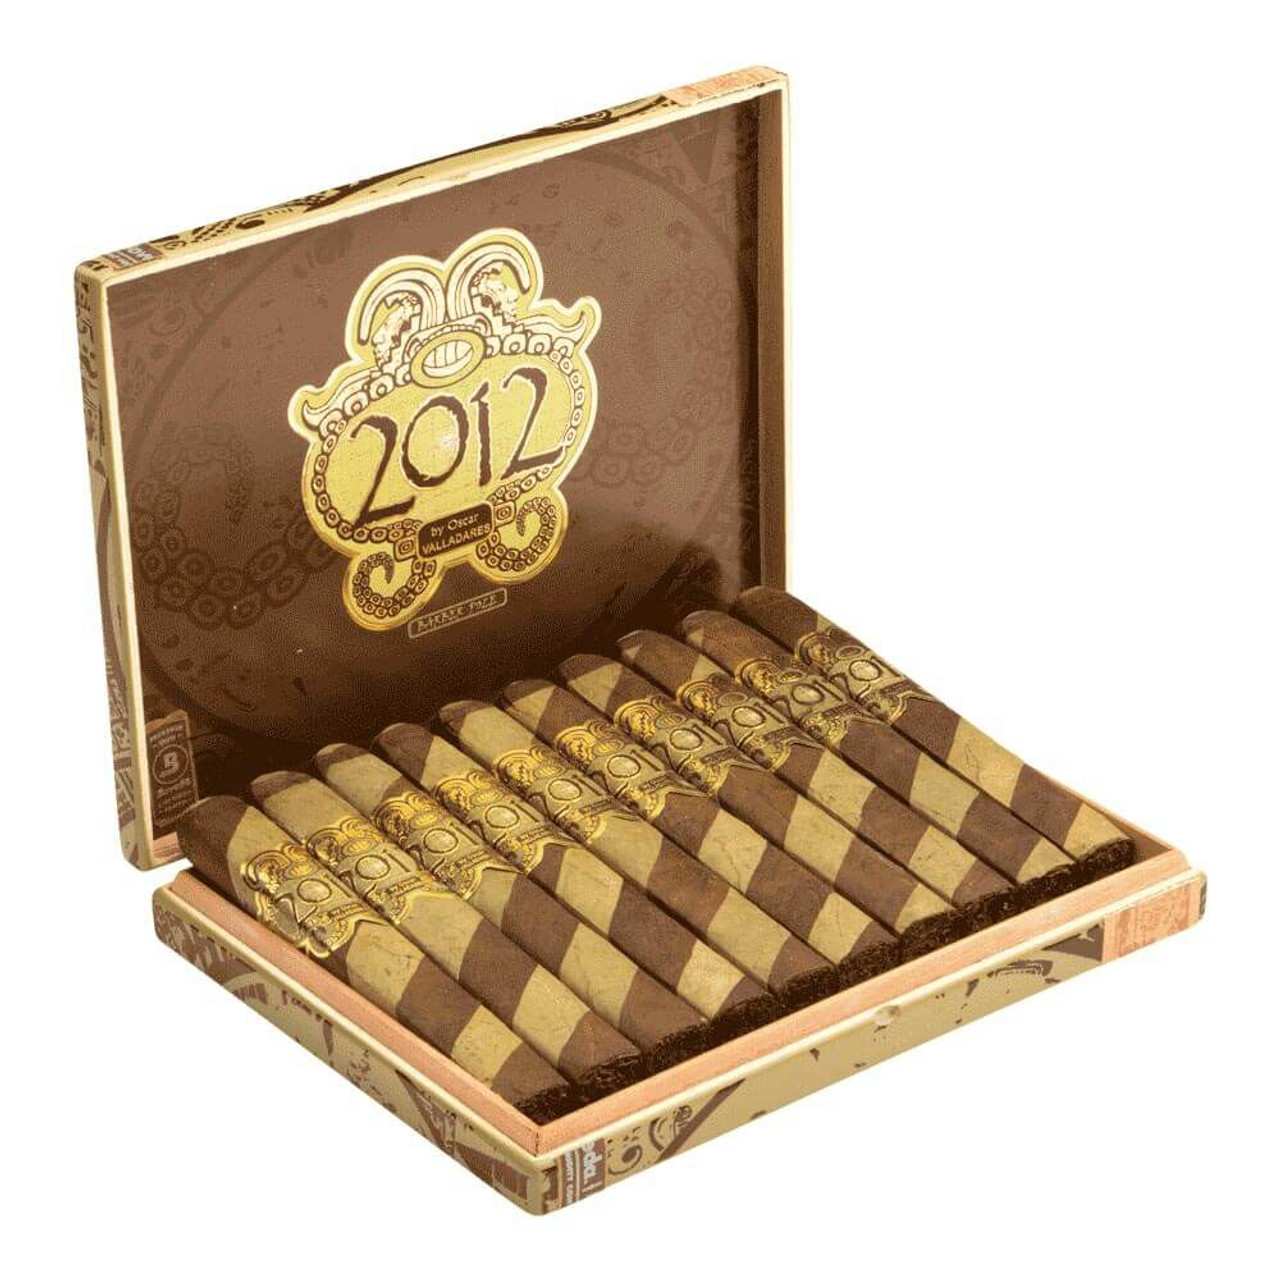 Oscar Valladares 2012 Barber Pole Toro Cigars - 6 x 52 (Box of 10) Open